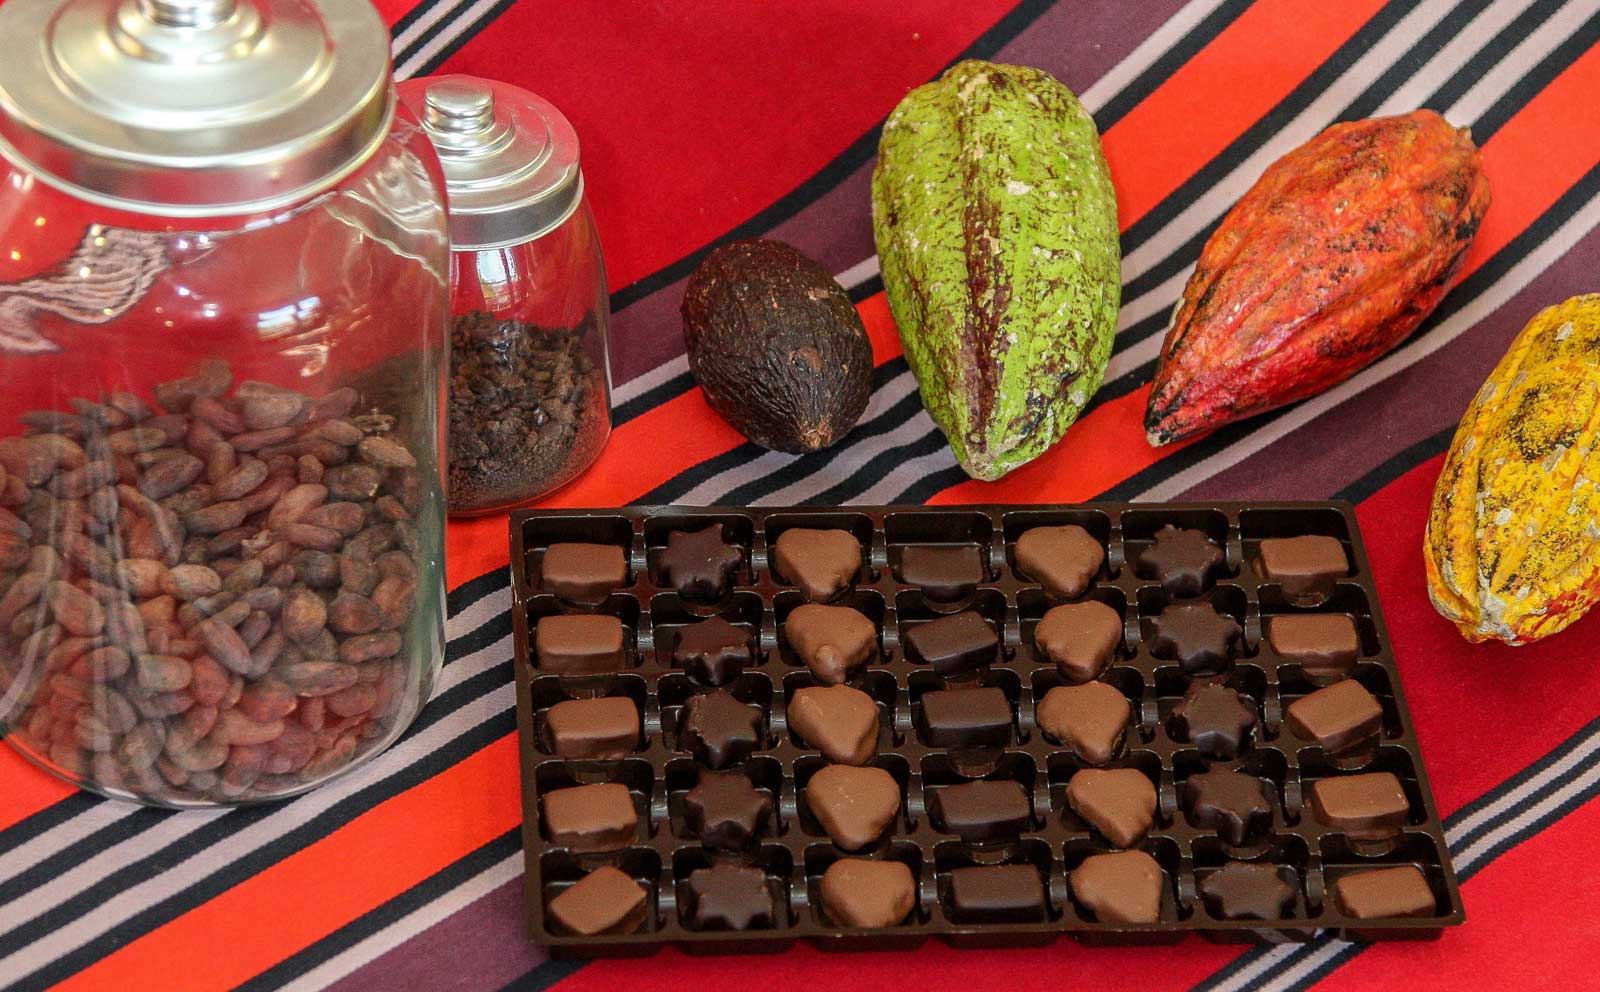 Ballotin de chocolats Basques : La sélection NOIR - Antton Espelette